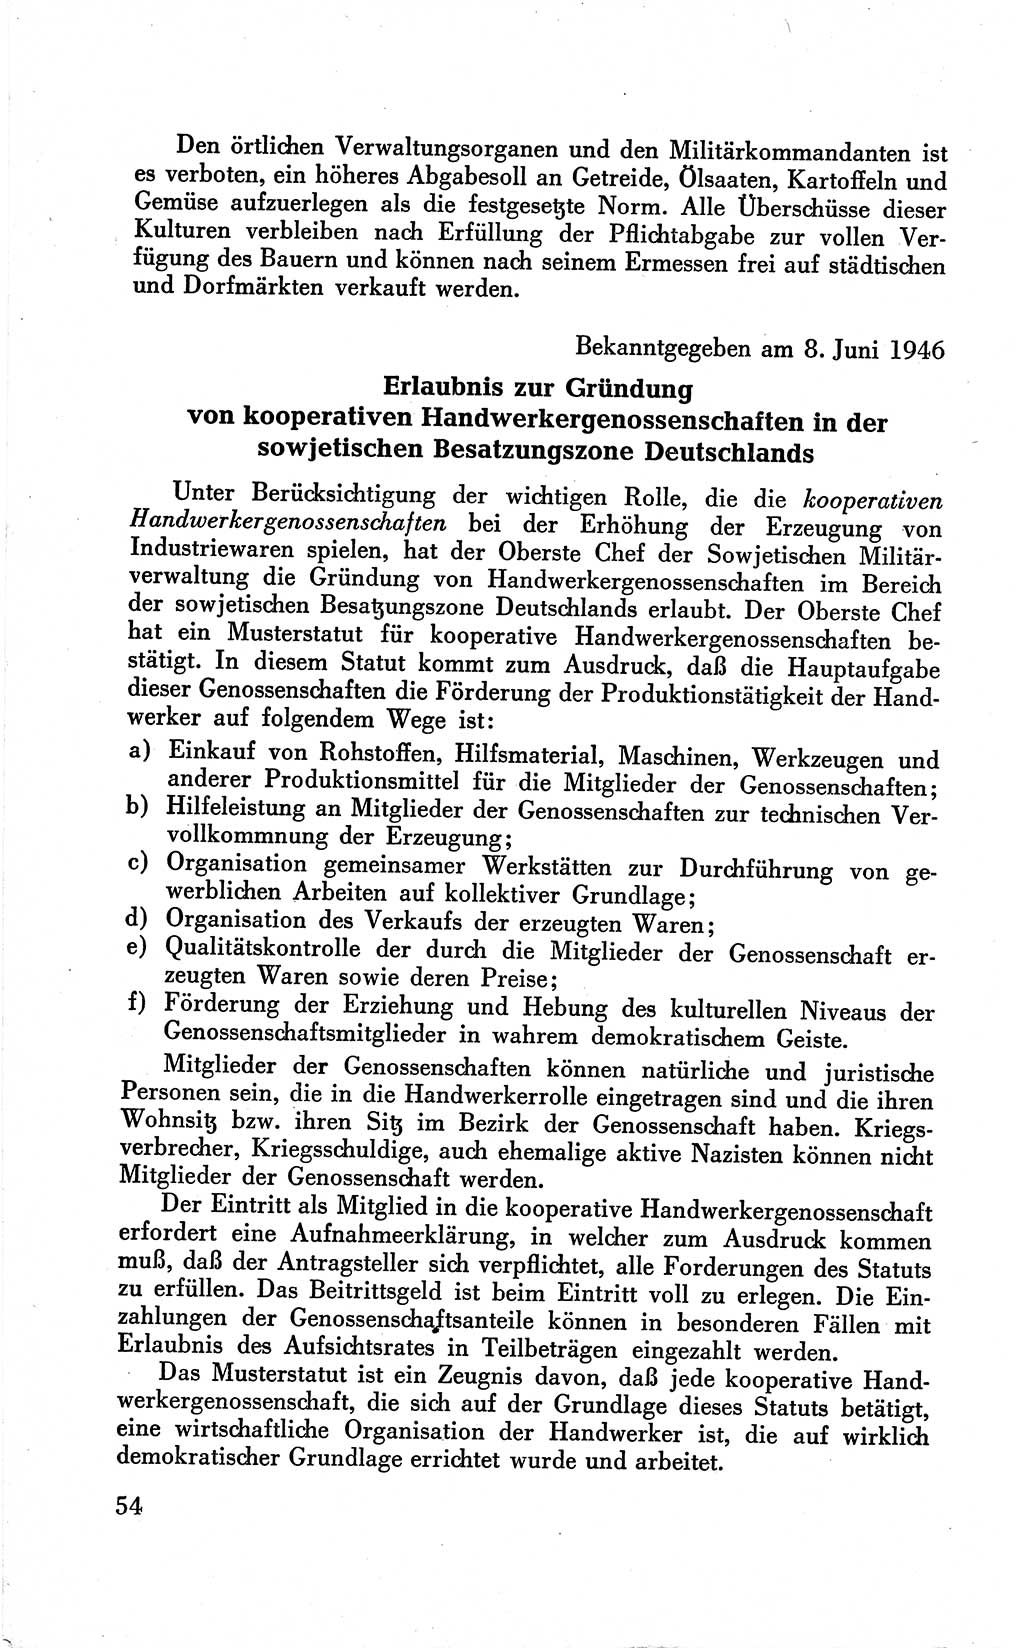 Befehle des Obersten Chefs der Sowjetischen Miltärverwaltung (SMV) in Deutschland - Aus dem Stab der Sowjetischen Militärverwaltung in Deutschland 1946 (Bef. SMV Dtl. 1946, S. 54)